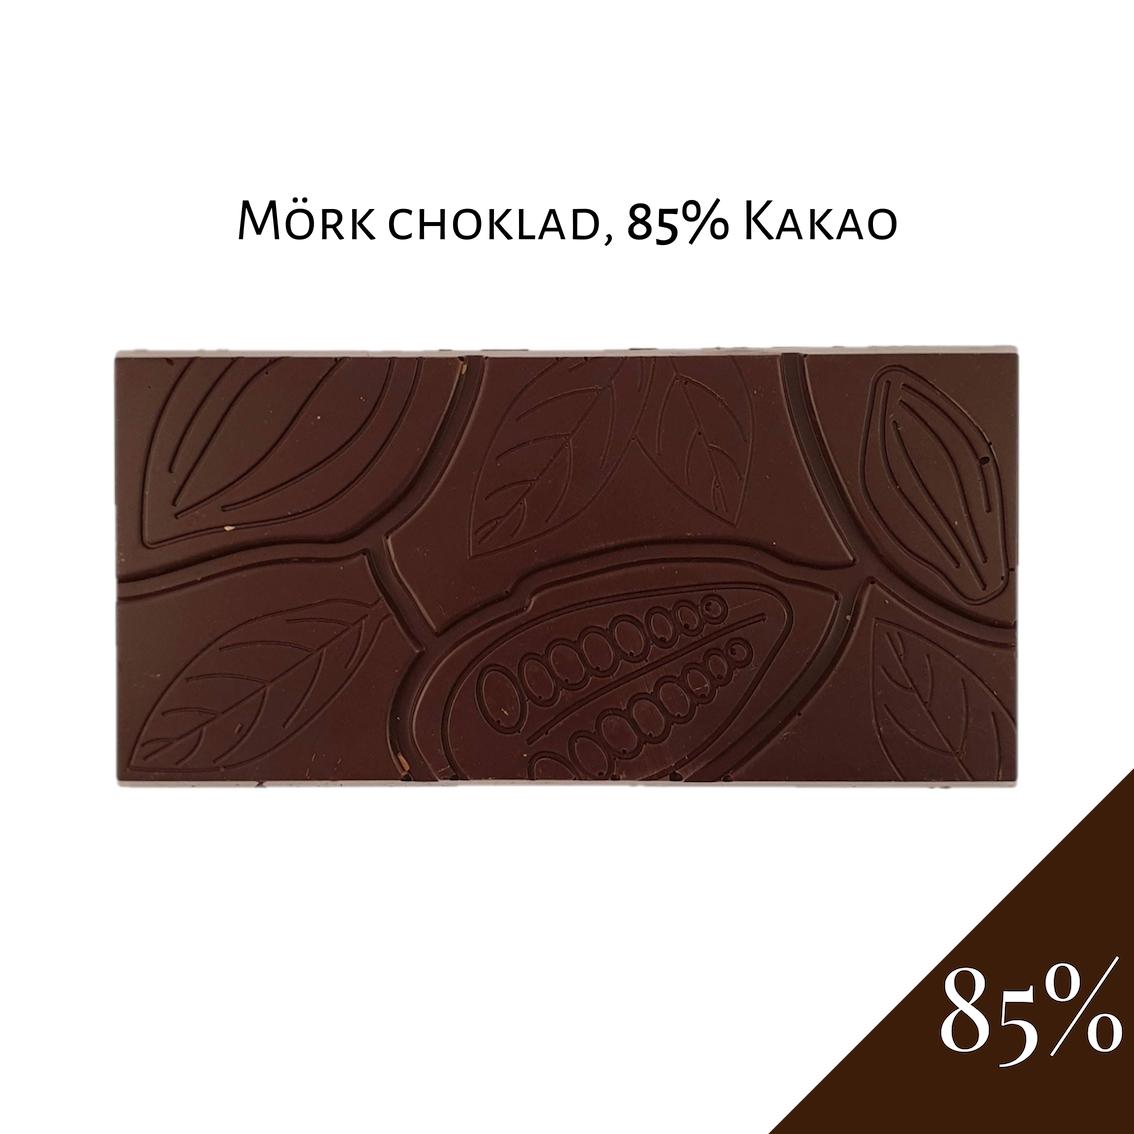 Pralinhuset85% Mörk choklad